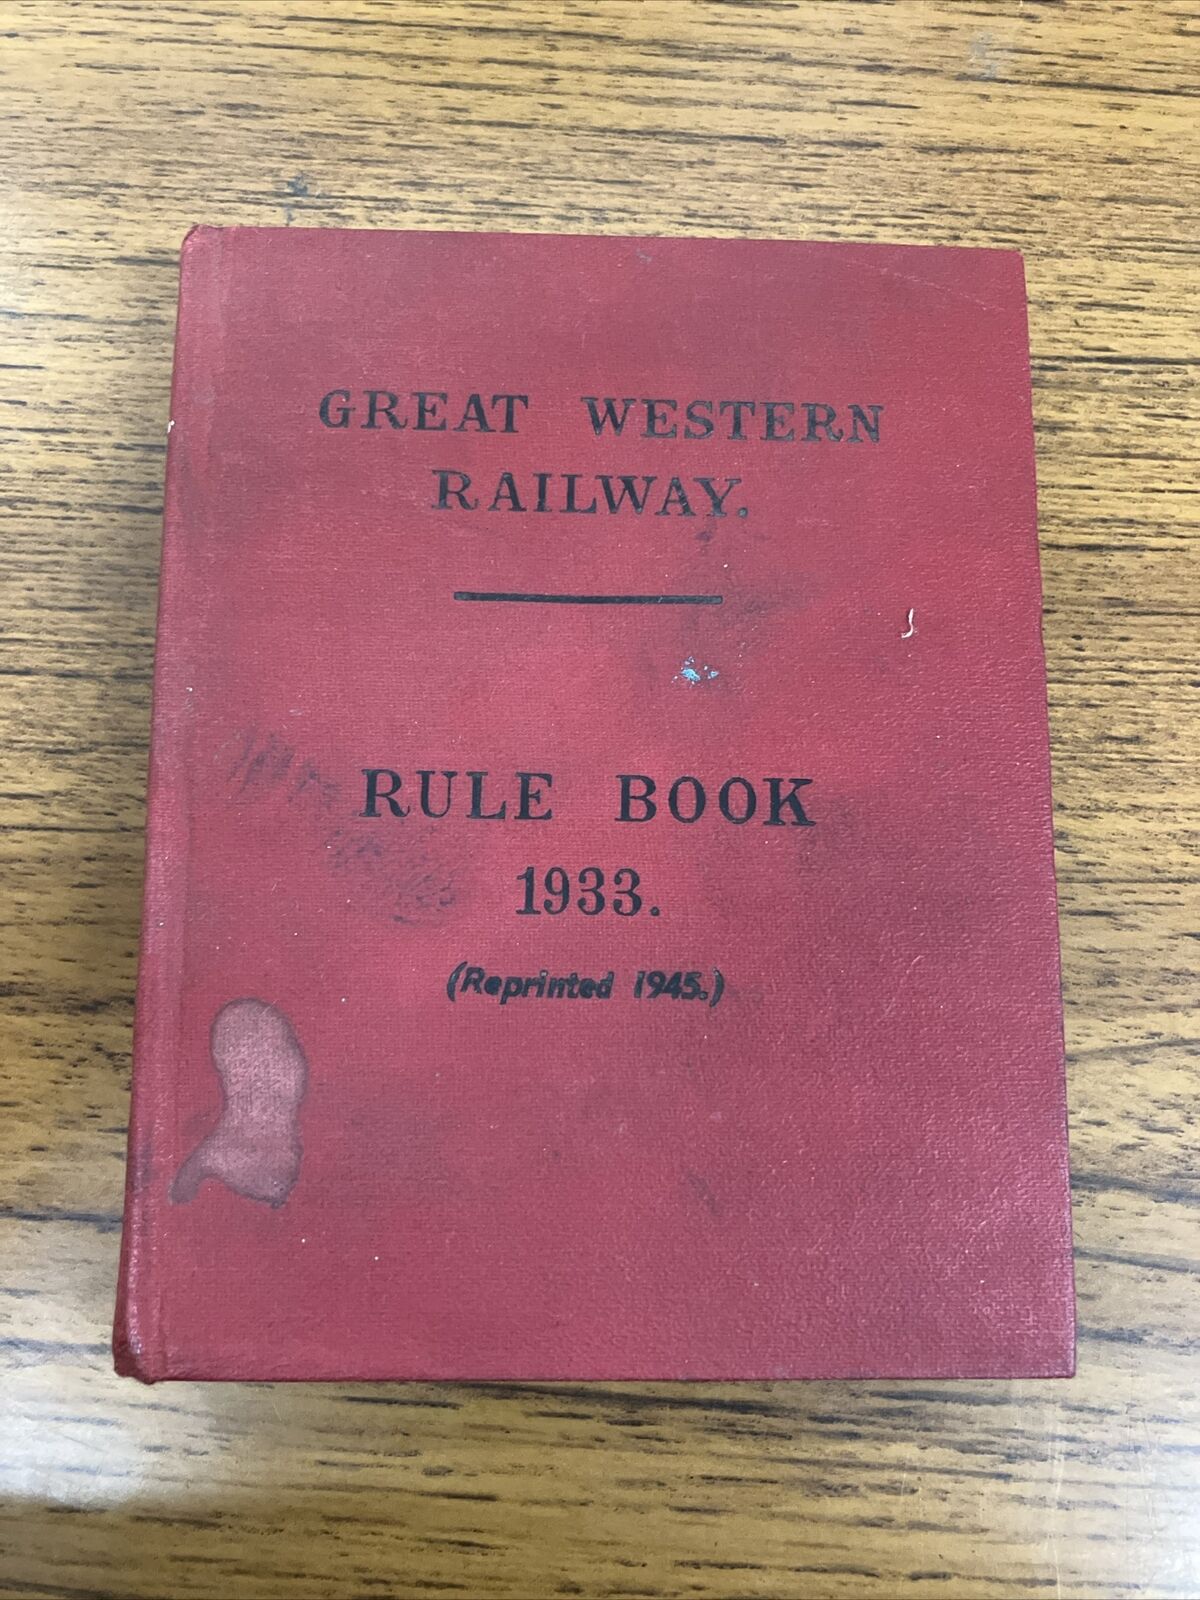 Great Western Railway Rule Book 1933 (Reprint 1945)